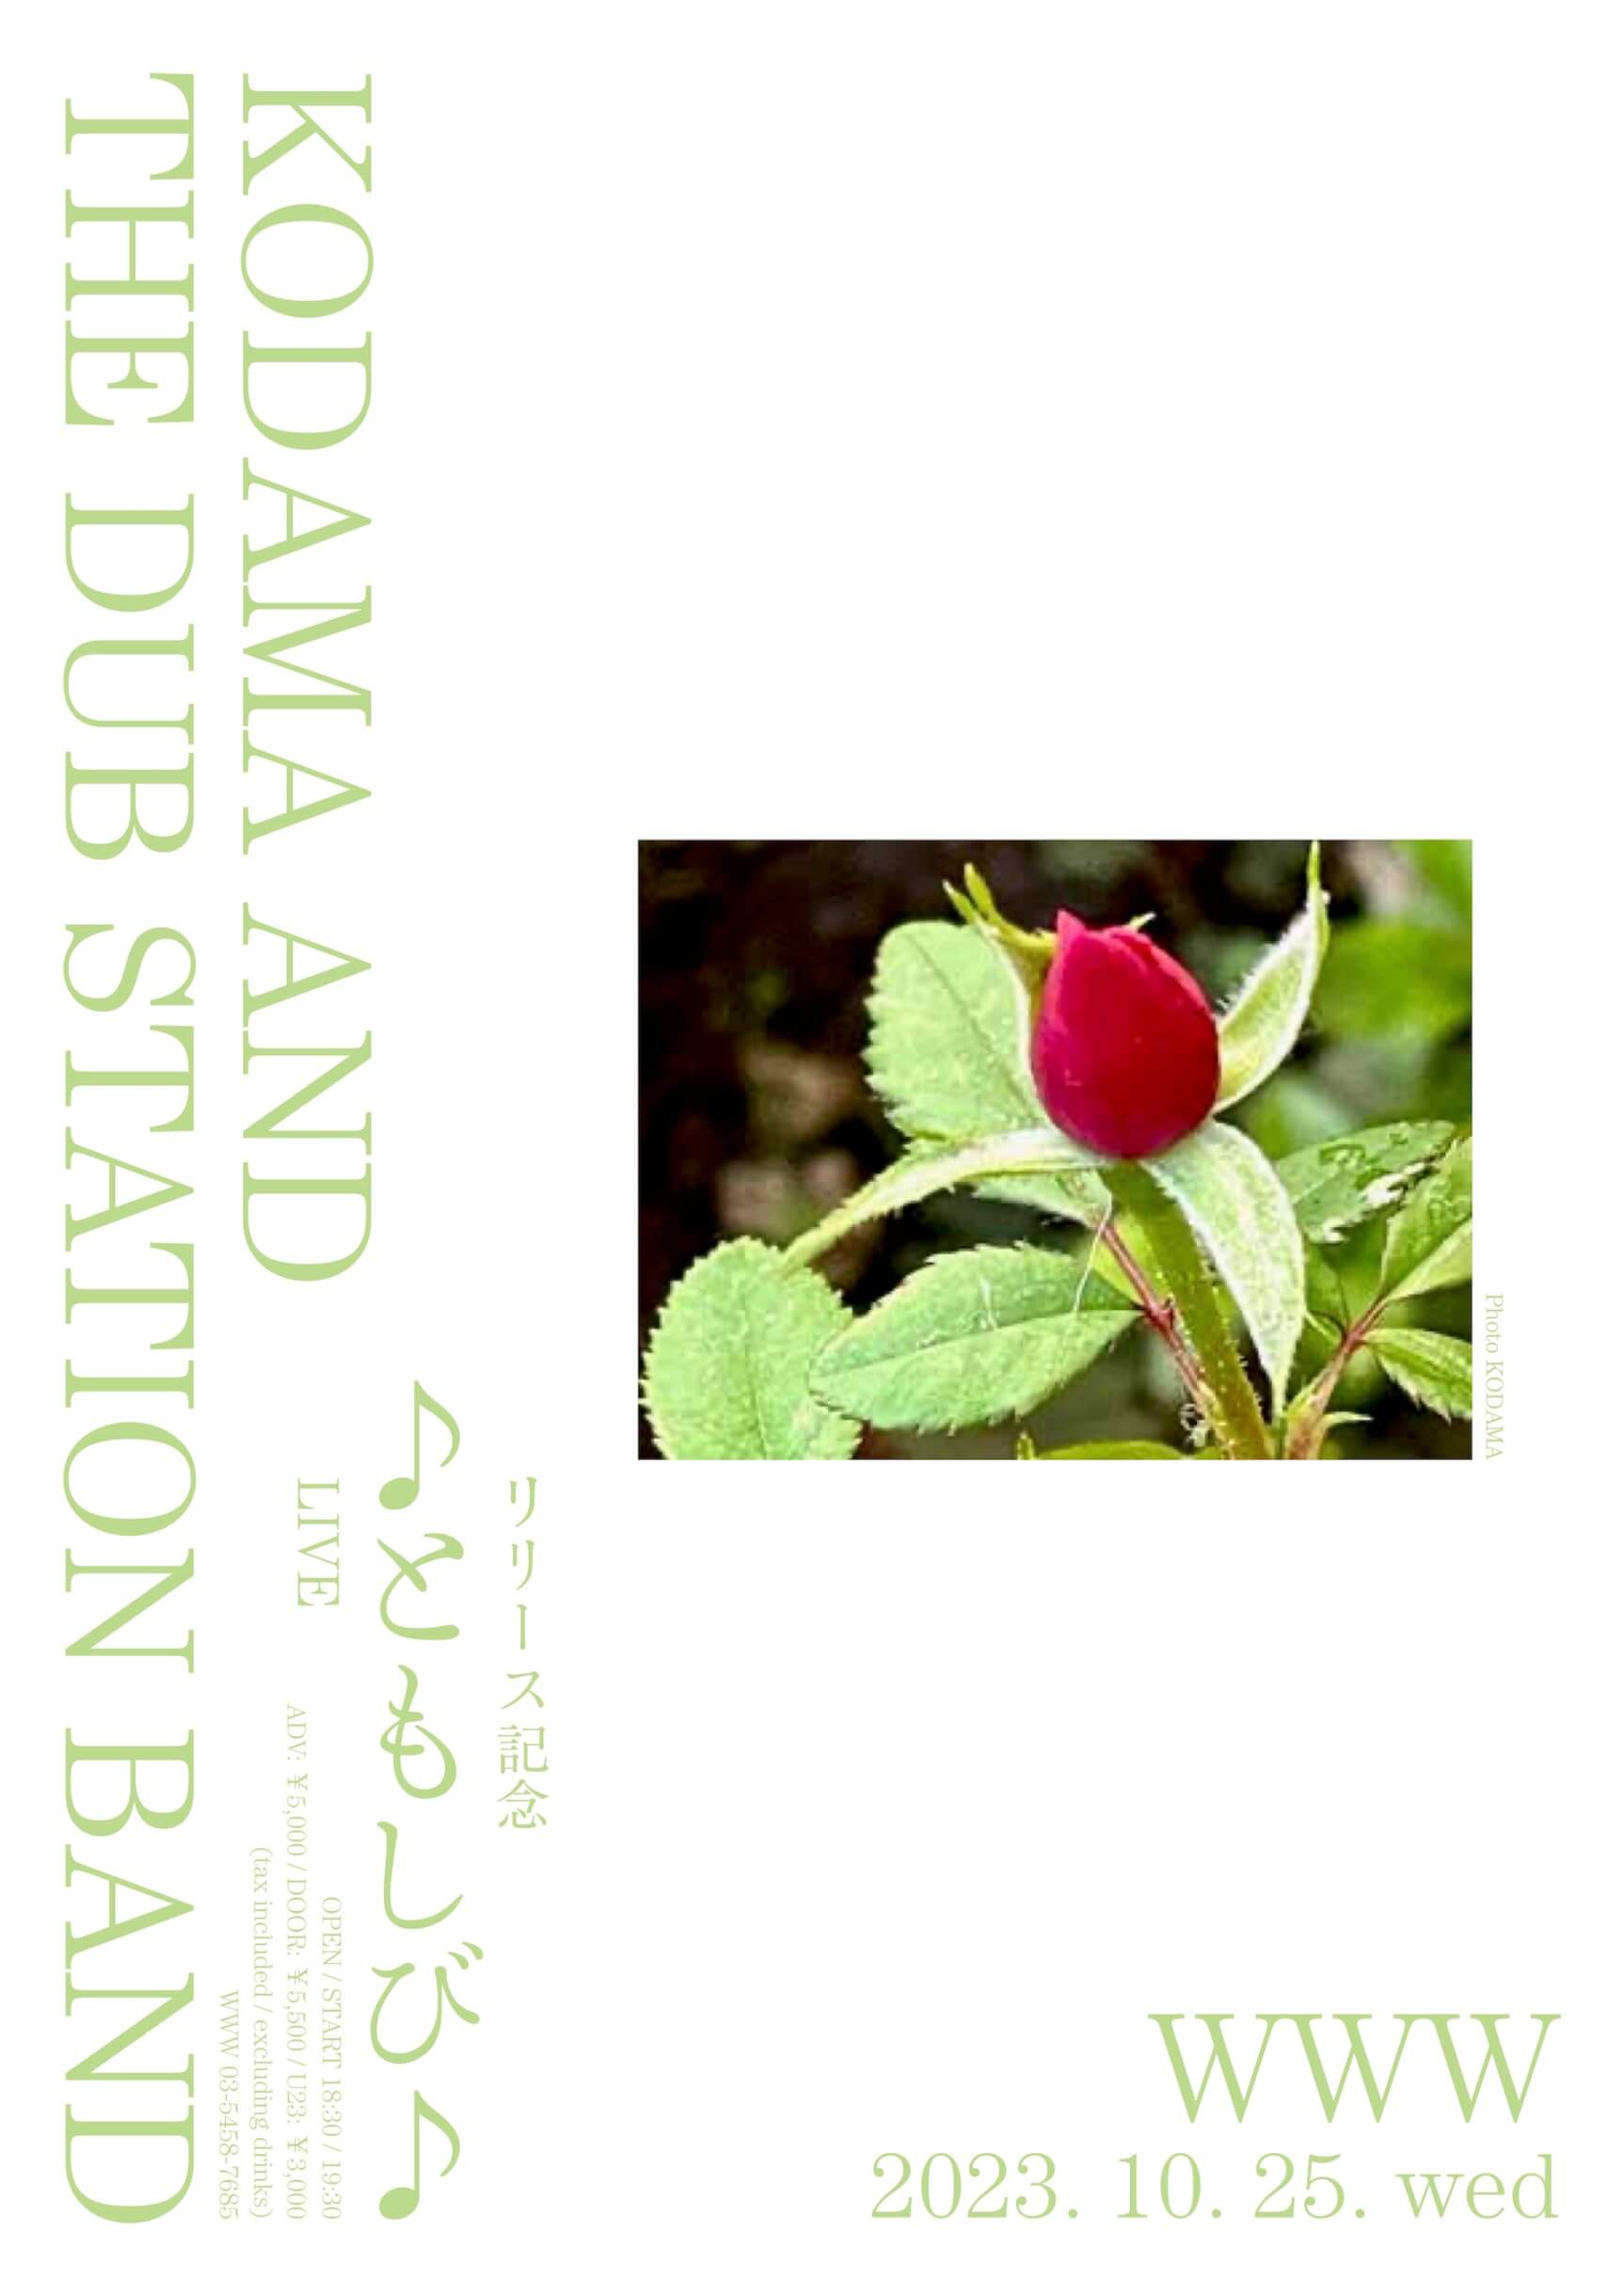 こだま和文が率いる「KODAMA AND THE DUB STATION BAND」の4年ぶりとなるアルバムリリースを記念した単独公演がWWWにて開催 music230824-kodama-and-the-dub-station-band1